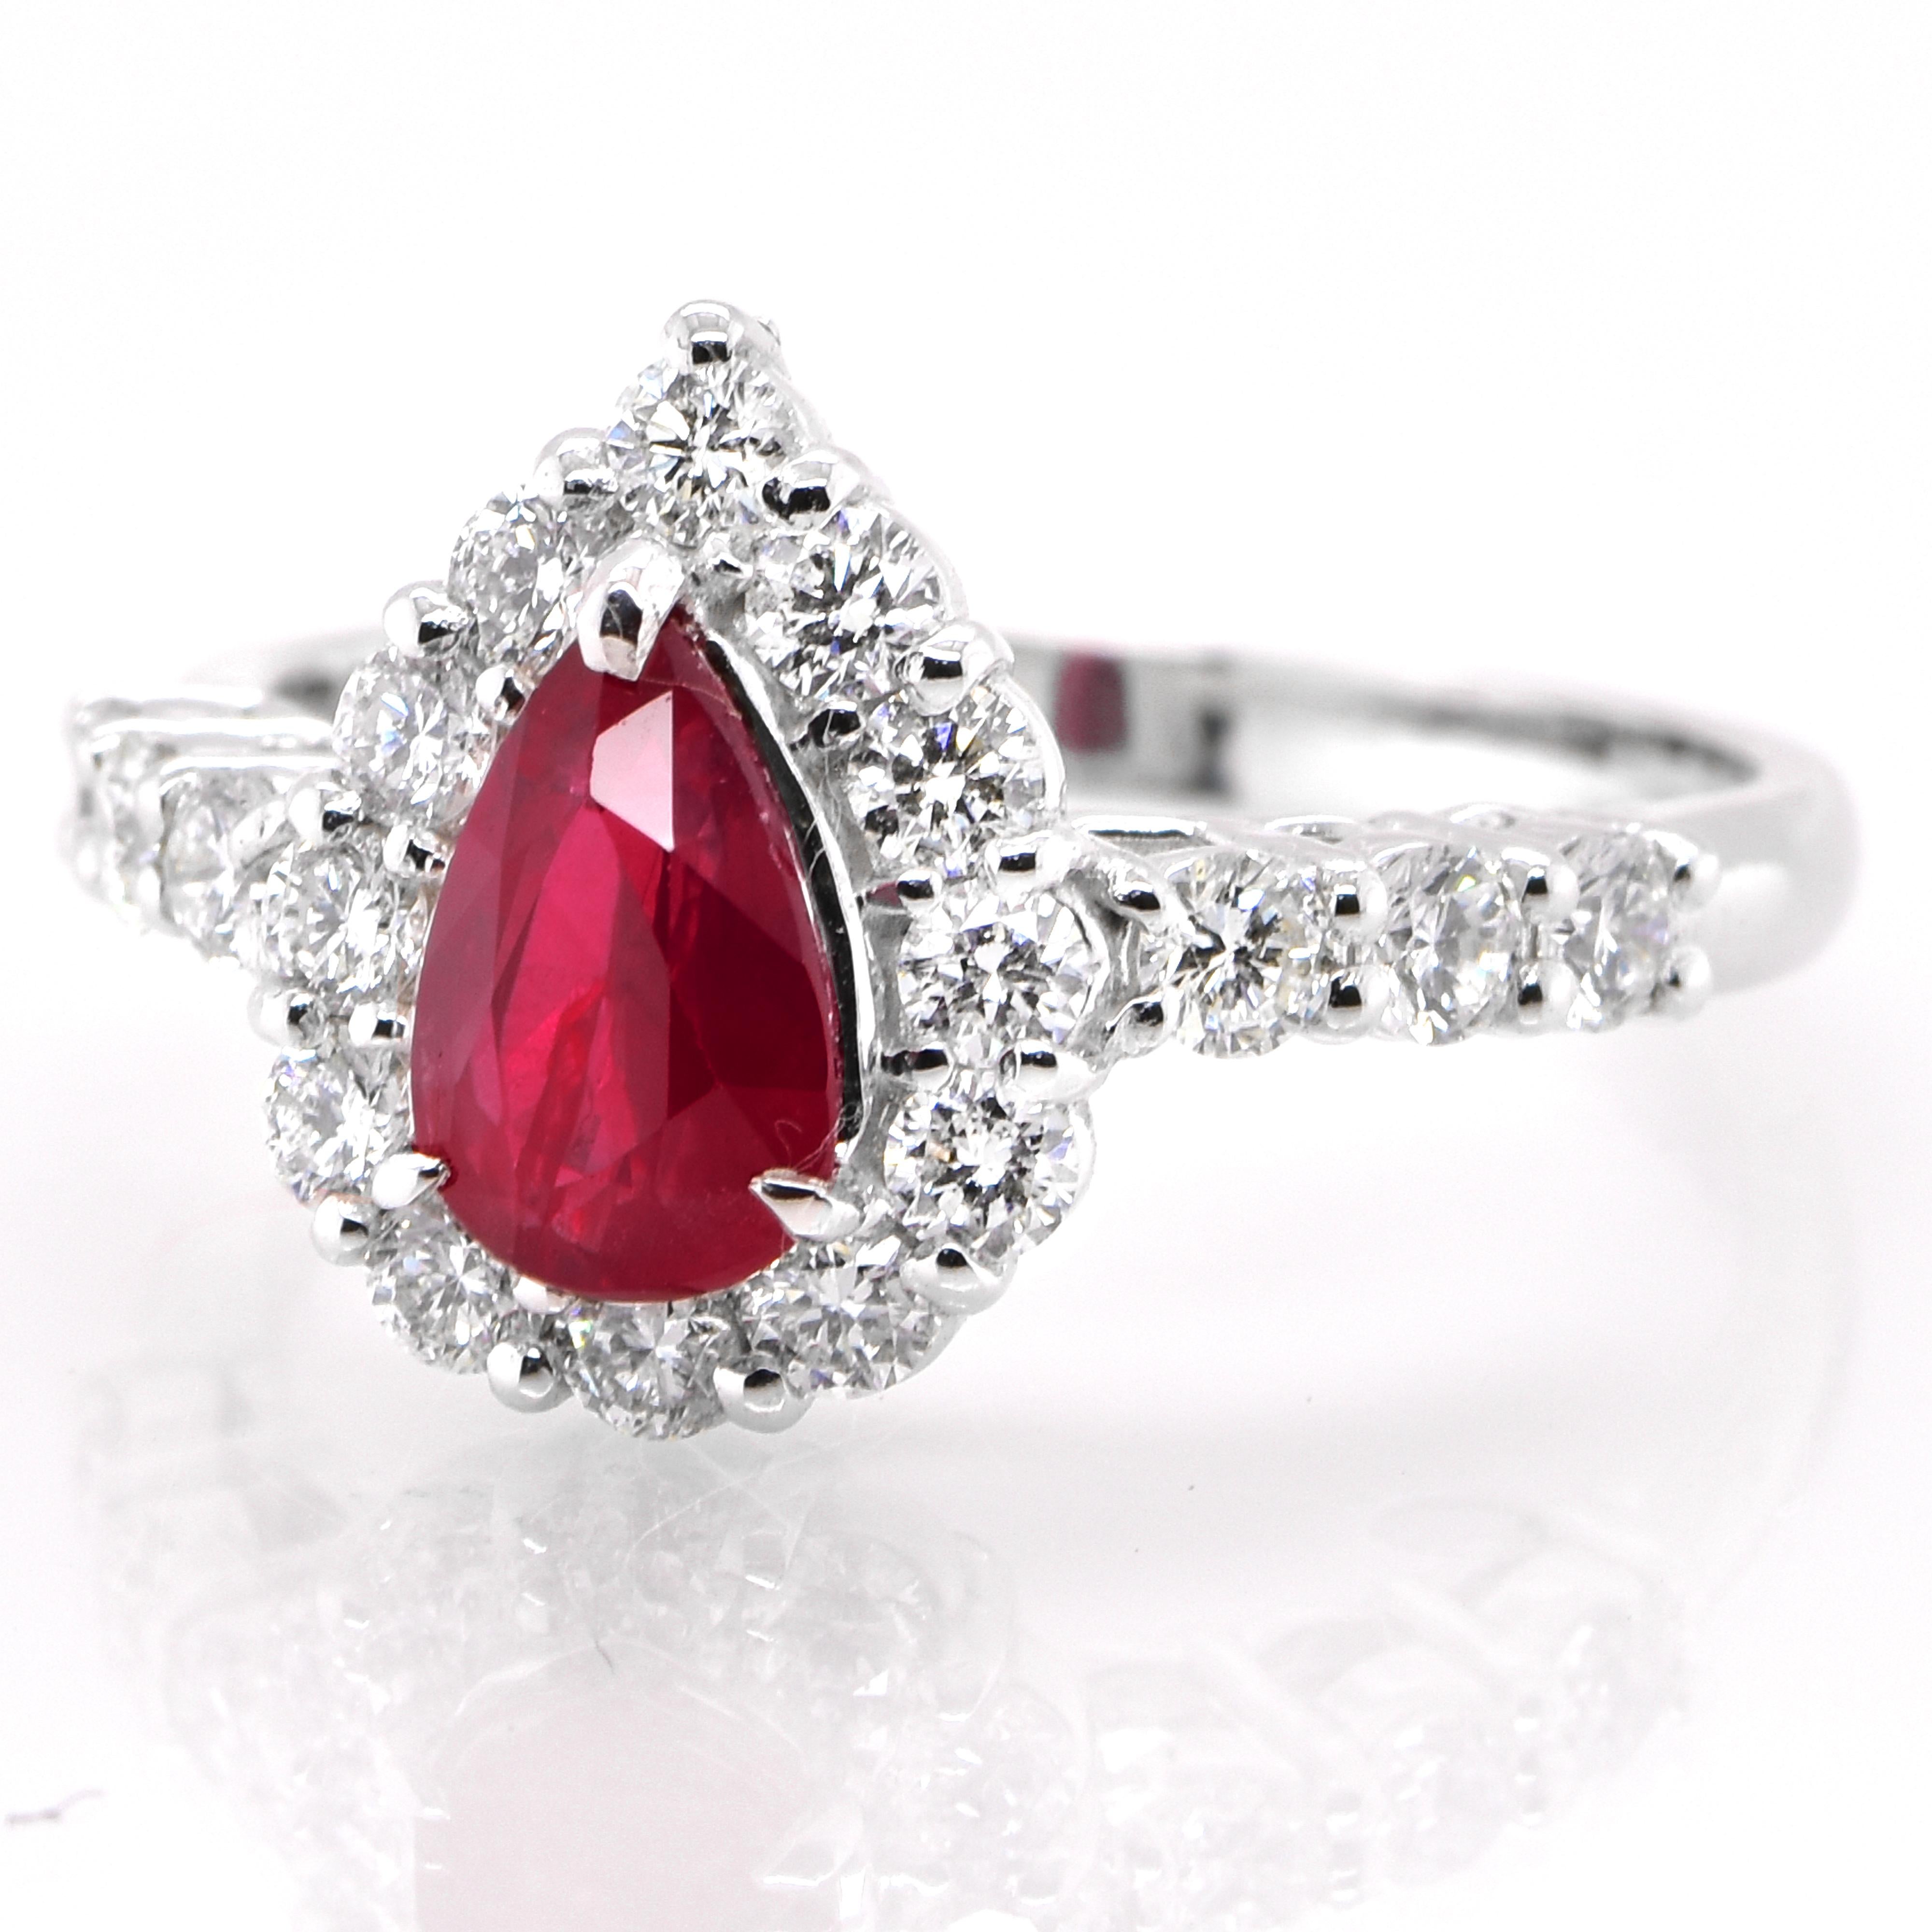 Ein wunderschöner Ring aus Platin mit einem GIA-zertifizierten, unbehandelten (nicht erhitzten) Rubin von 1,08 Karat und Diamanten von 0,69 Karat. Rubine werden im Sanskrit als 